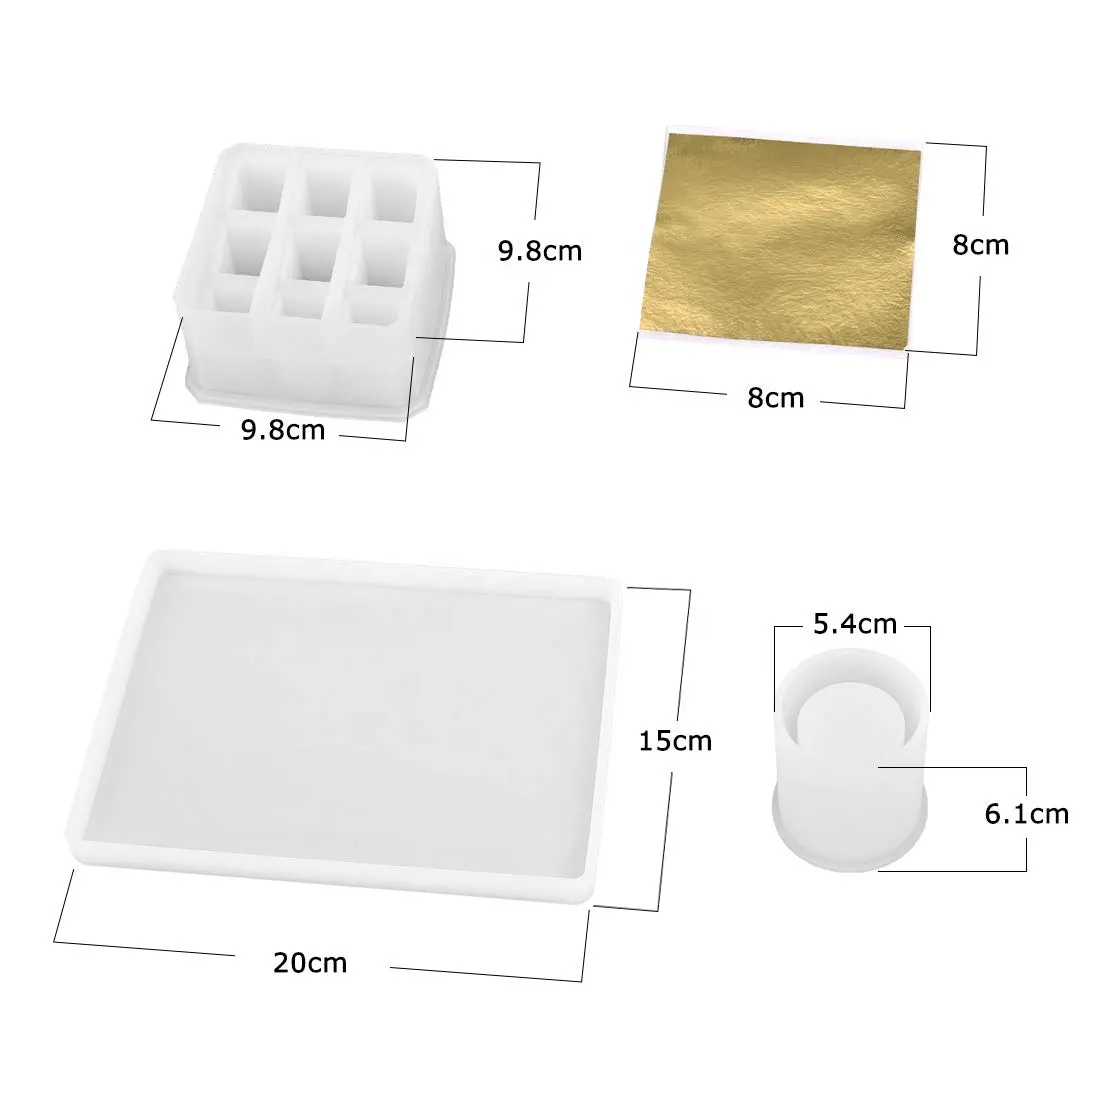 저장 상자 실리콘 수지는 메이크업 립스틱 보석 전시, 9 강저, 둥근, 장방형 쟁반 cas를 가진 보석 주물 형을 주조합니다